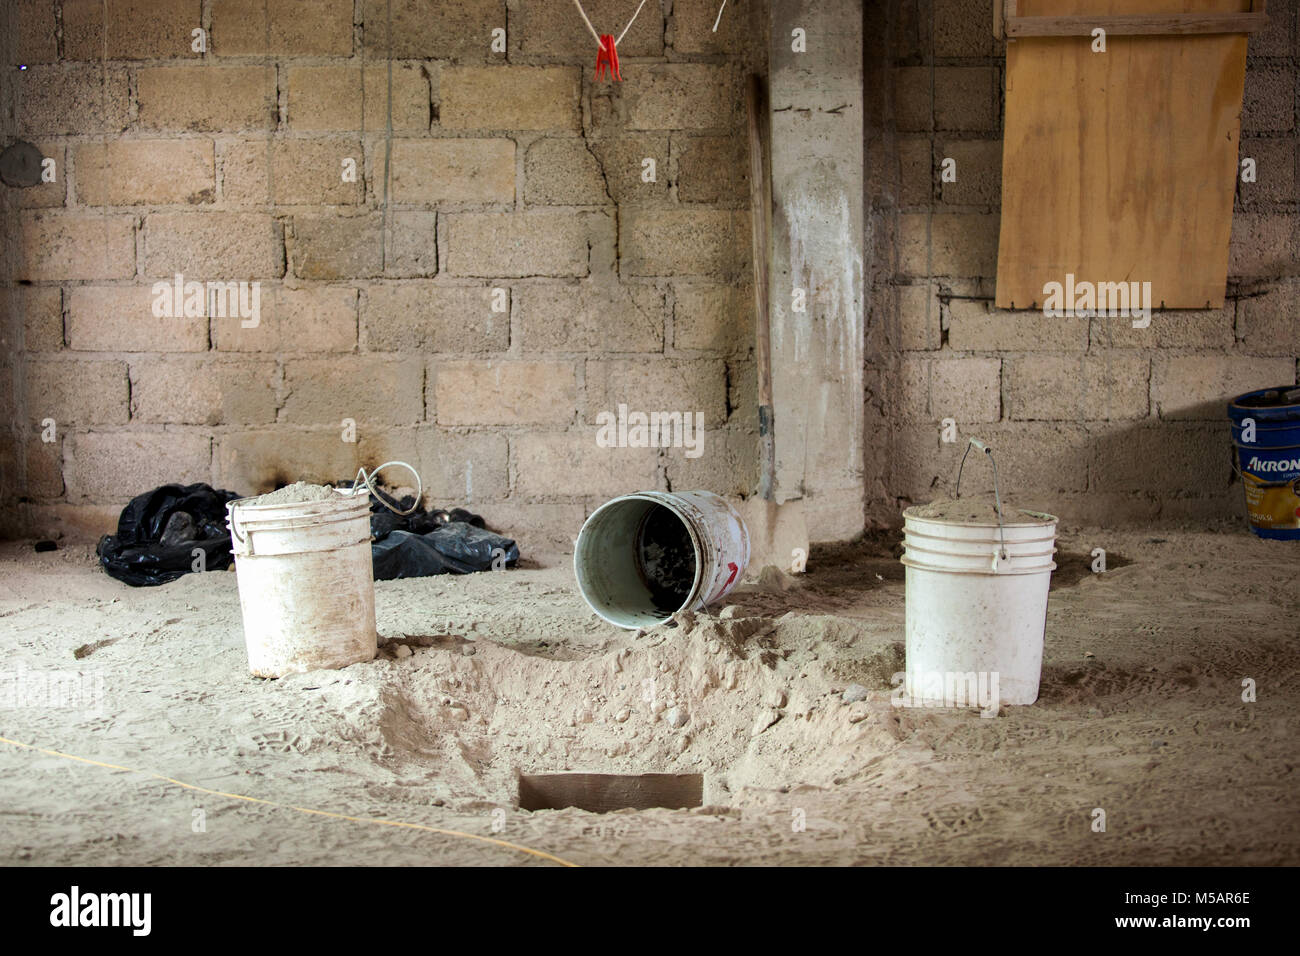 Un petit tunnel dans le plancher d'une maison de ferme qui a été utilisé par Joaquin "El Chapo" Guzman pour échapper à la prison de l'Altiplano près de Toluca, Mexique le dimanche 12 juillet 2015. Le célèbre chef du cartel Joaquin "El Chapo" Guzman s'est échappé de cette prison de haute sécurité la nuit d'avant à travers un tunnel. C'est la deuxième fois qu'il a échappé à une prison mexicaine. Banque D'Images